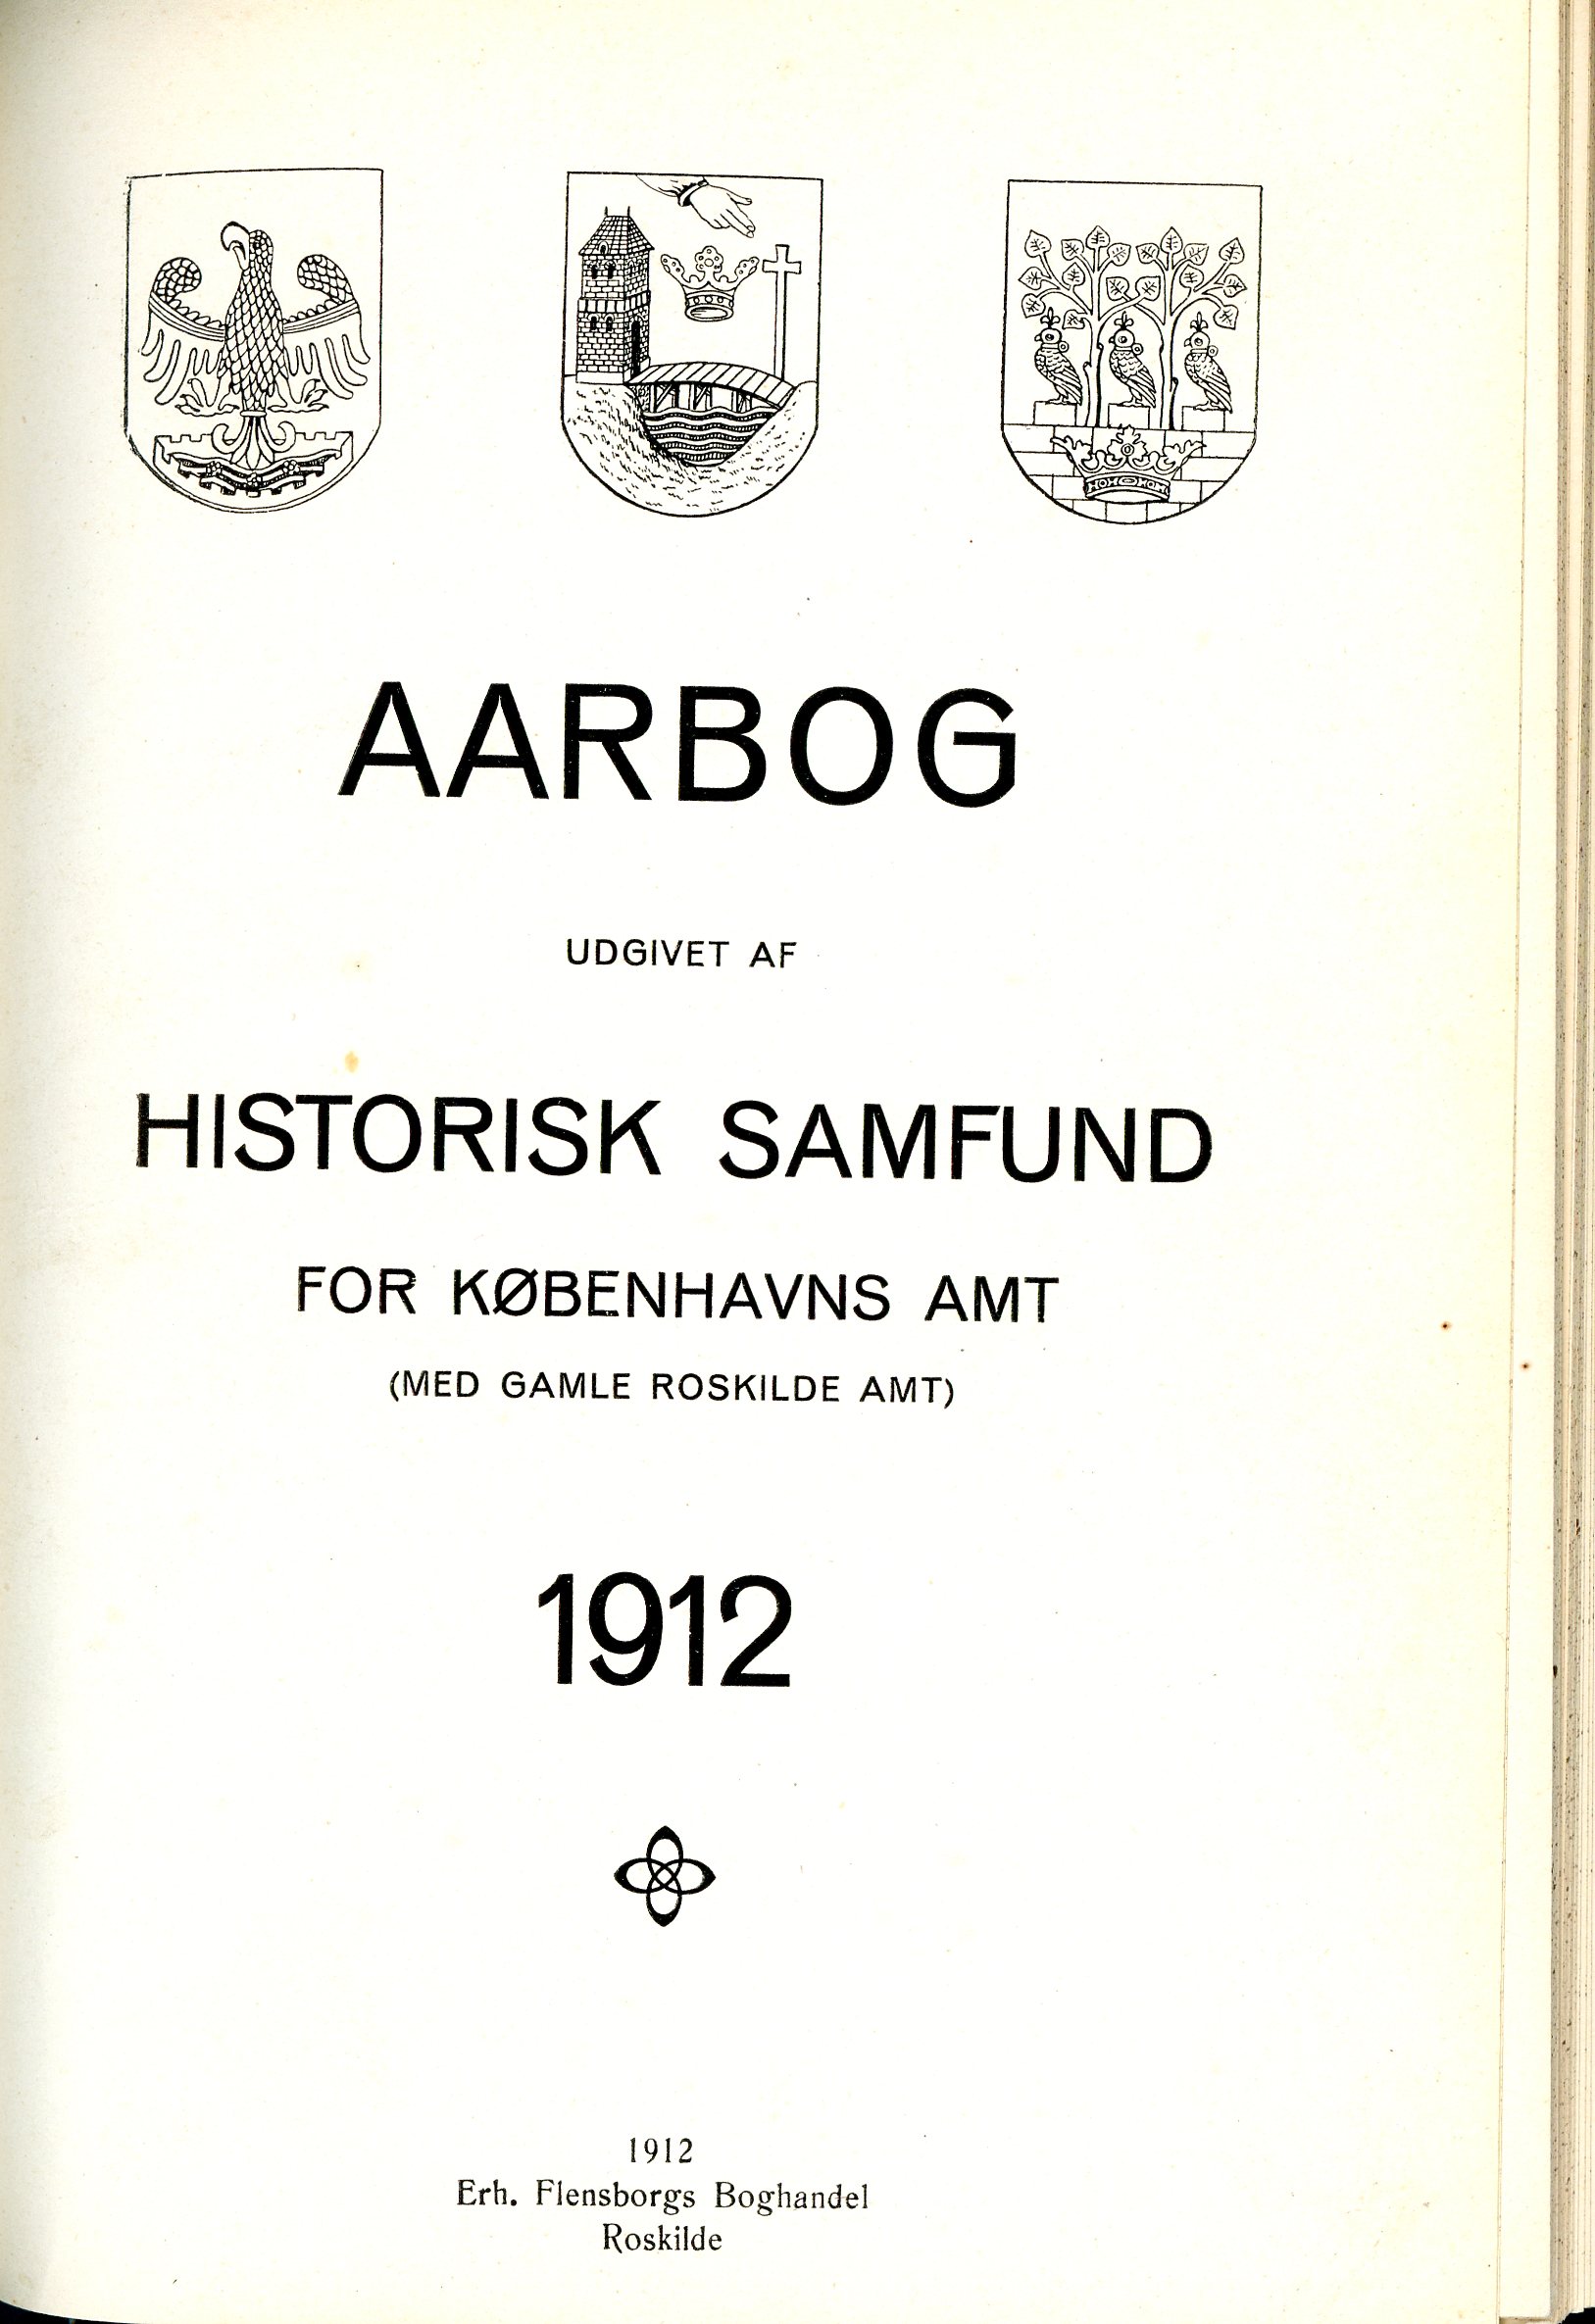 					Se Nr. 1 (1912): Aarbog udgivet af Historisk Samfund for Københavns Amt (med Gamle Roskilde Amt) 1912
				